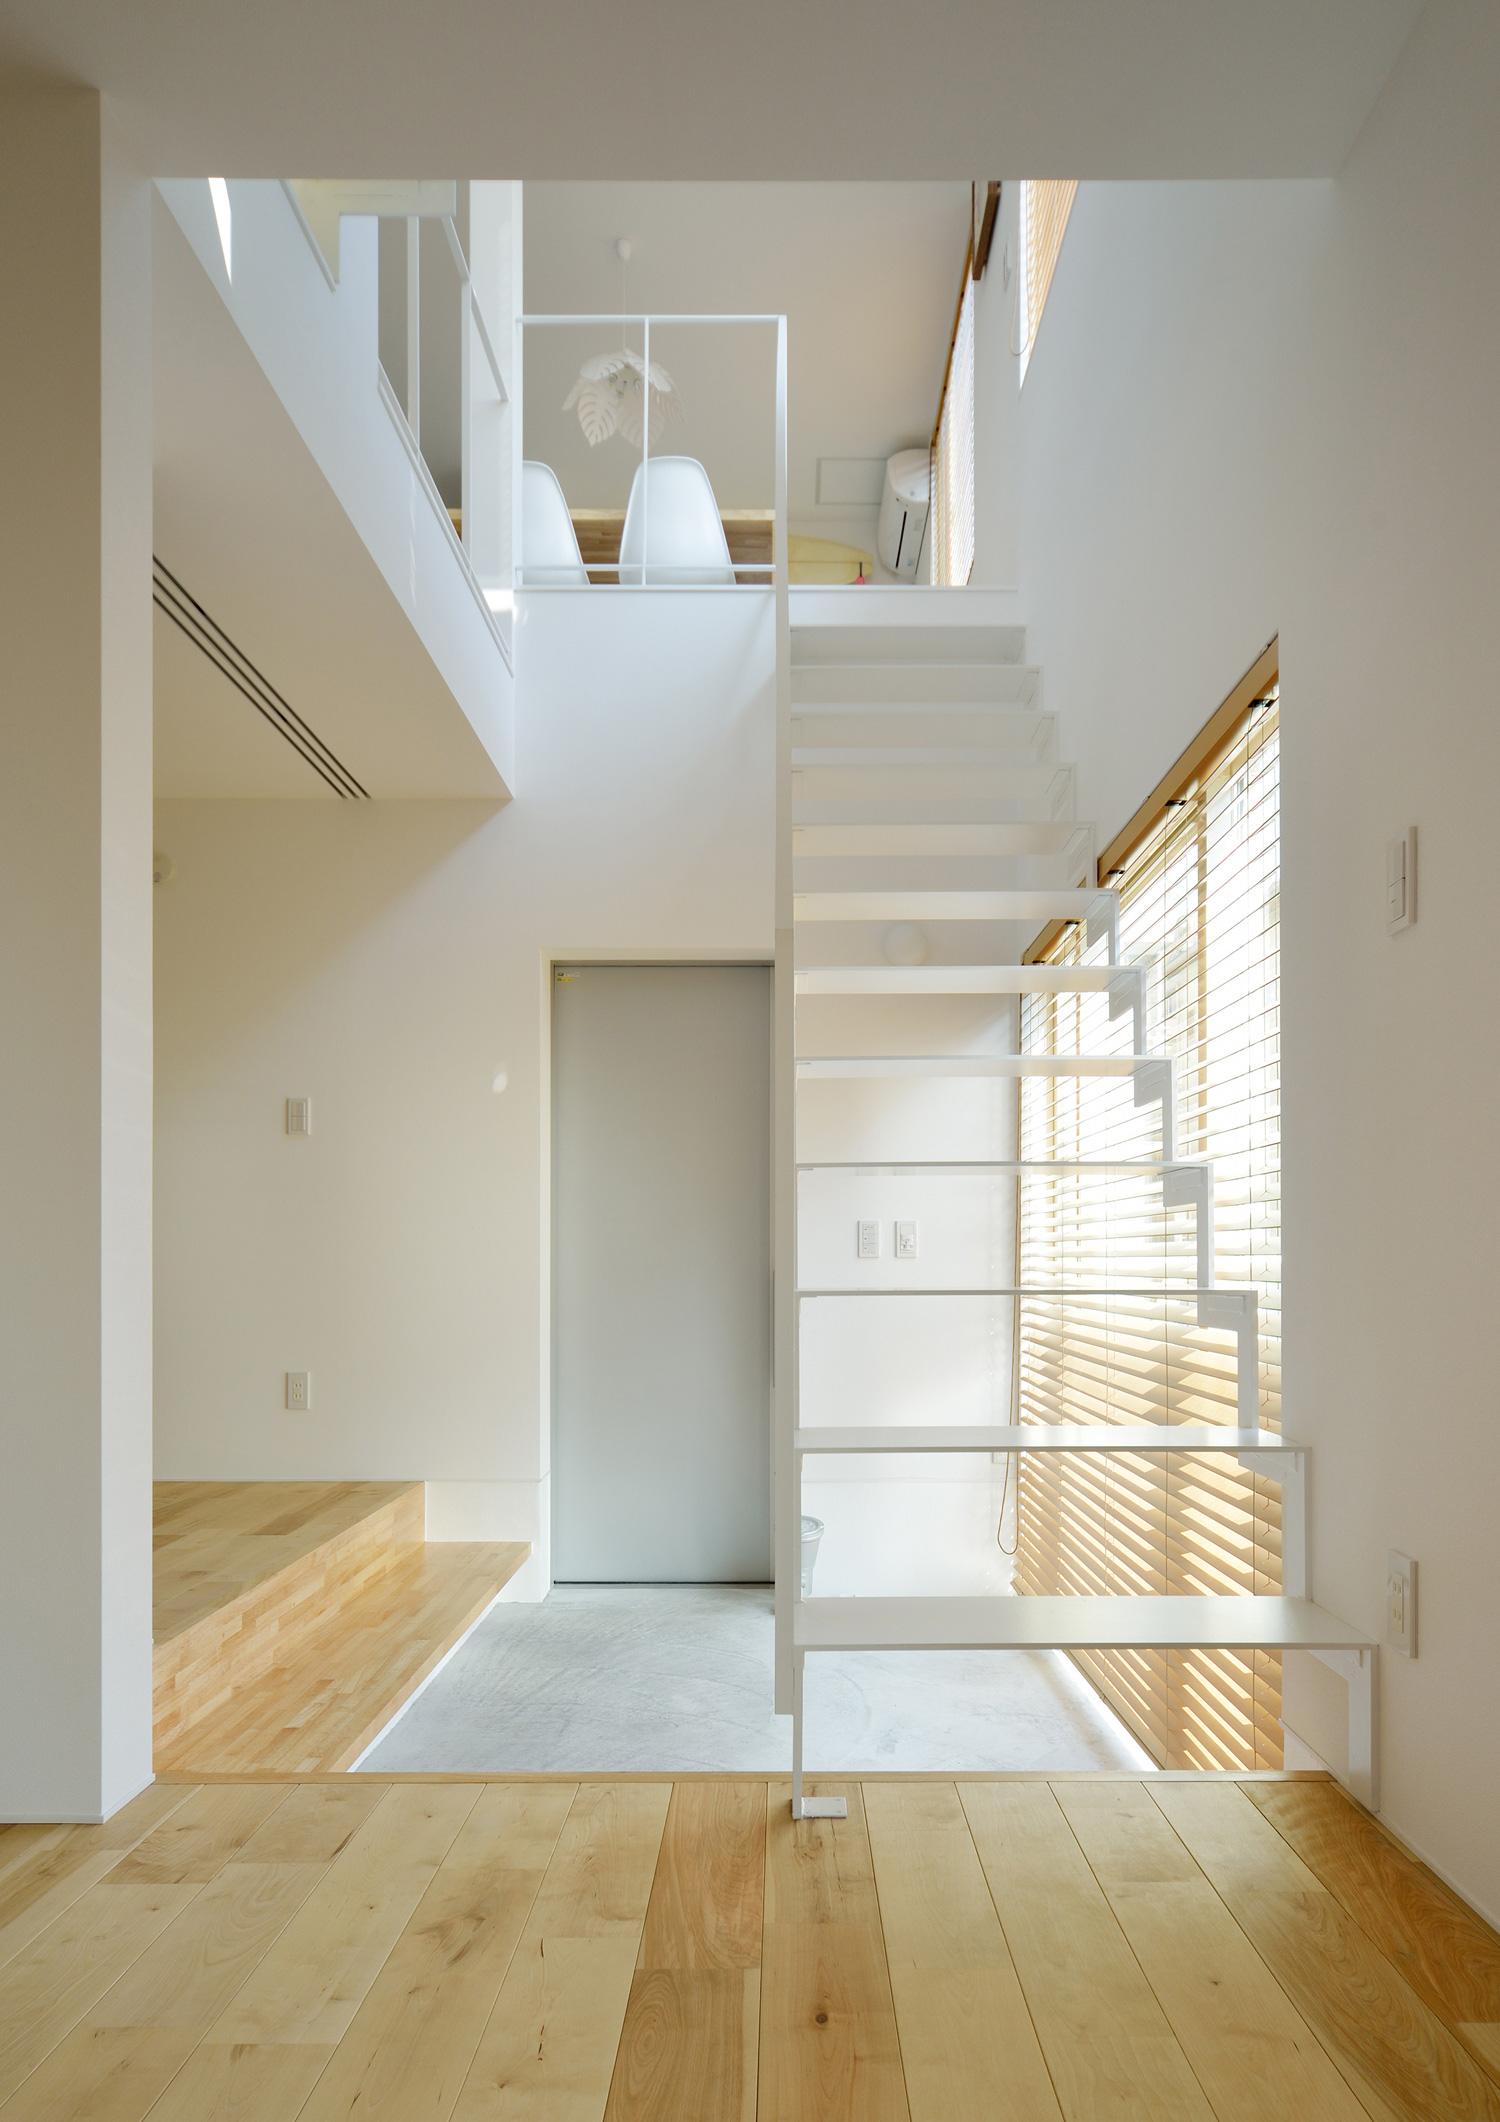 土間玄関の上を横切る白い金属製のスケルトン階段・デザイン住宅